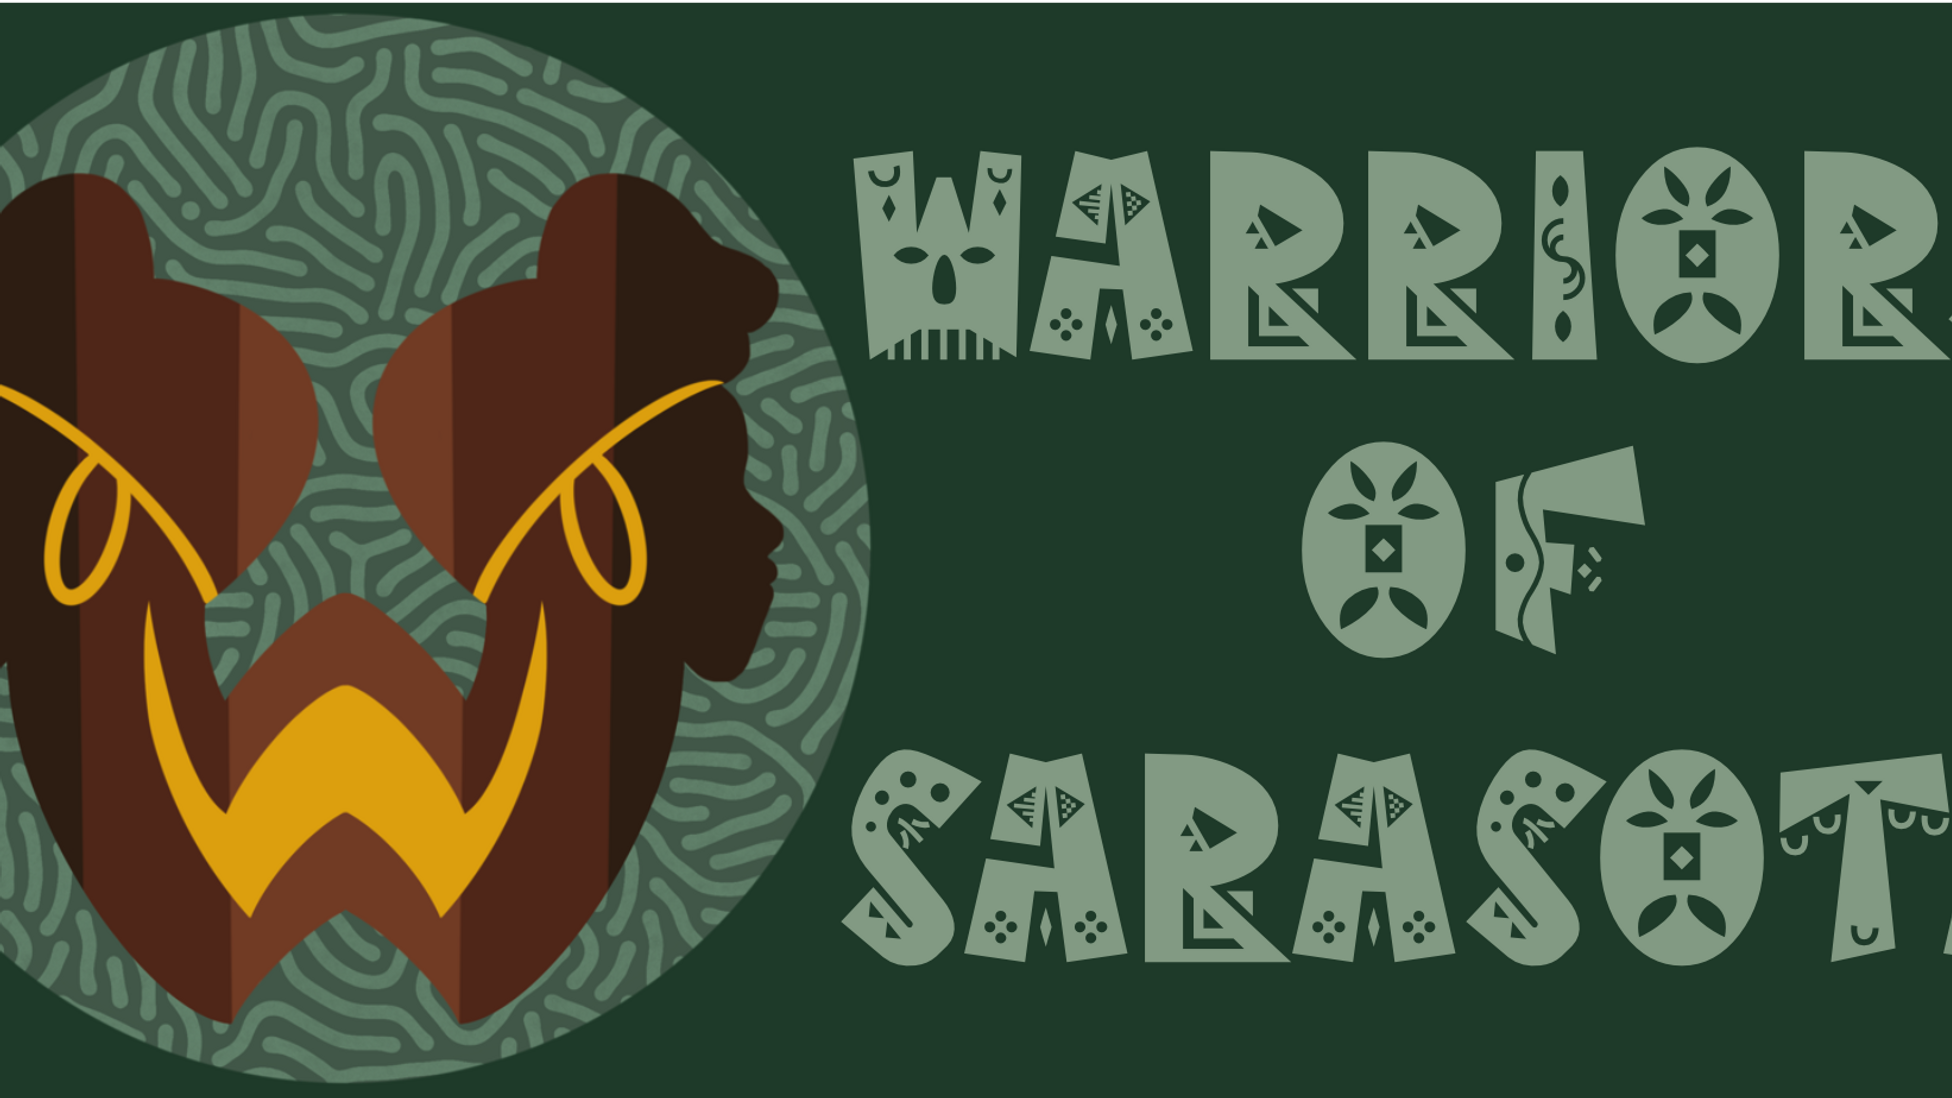 Warriors of Sarasota